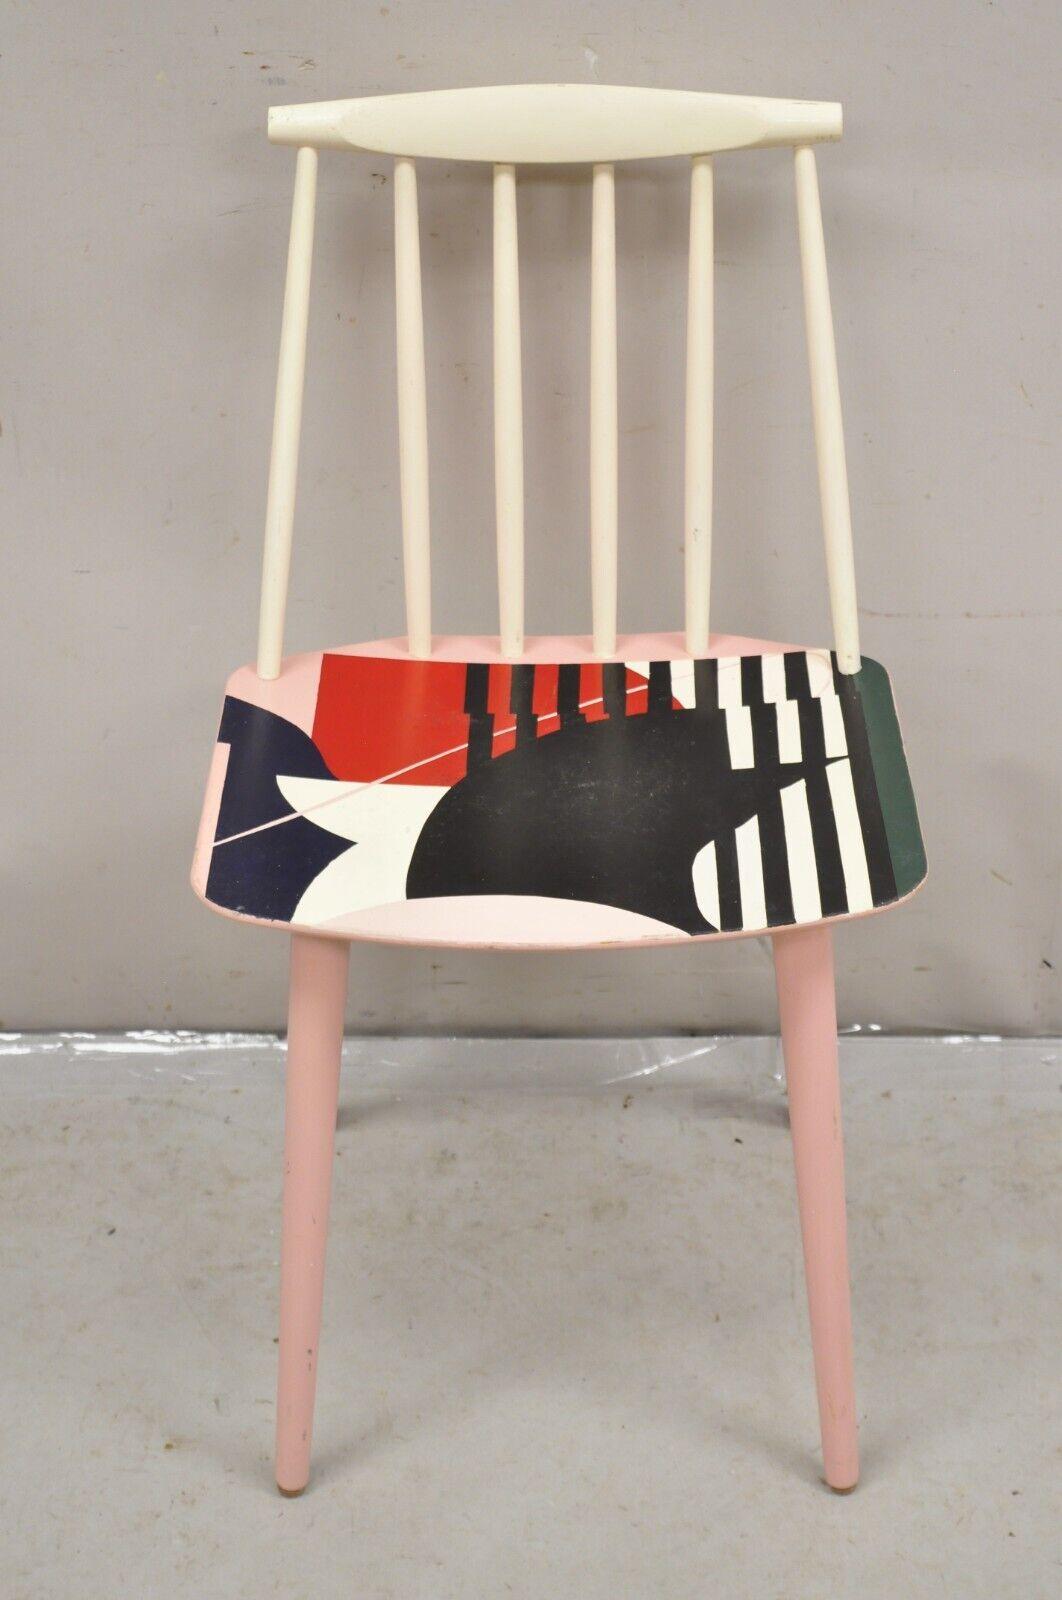 KAY Folke Pålsson J77 Dining Side Chair mit abstraktem handgemaltem Kunstwerk, signiert KMAC. Bemalt in verschiedenen Farben wie zartrosa, weiß, schwarz, grün, blau und rot. CIRCA Spätes 20. Jahrhundert. Abmessungen: 31,5